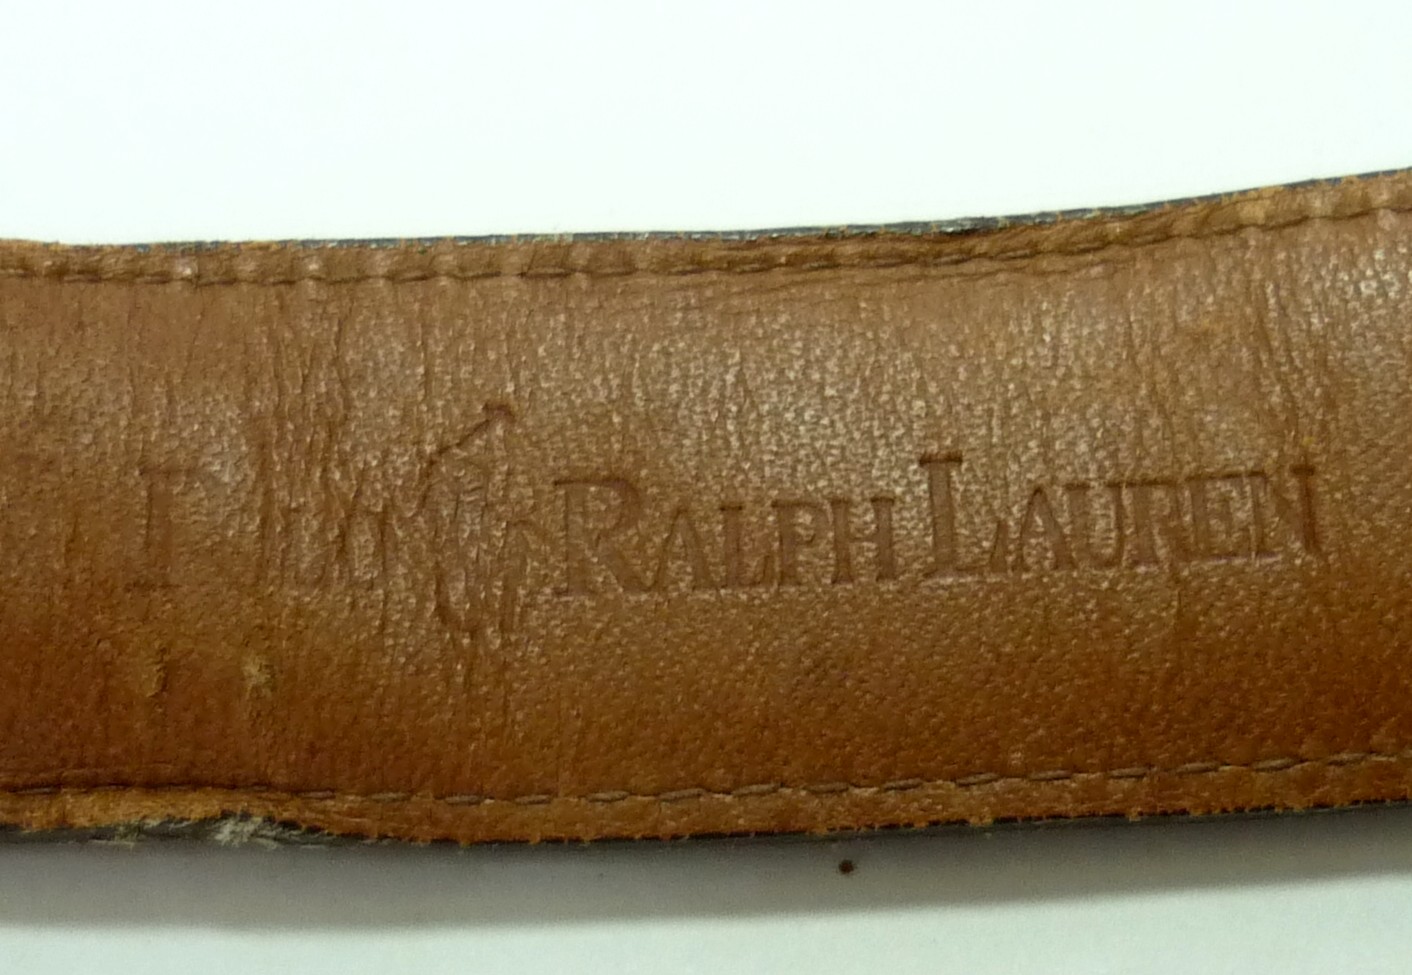 @RCHYbundle: POLO ralph lauren leather belts